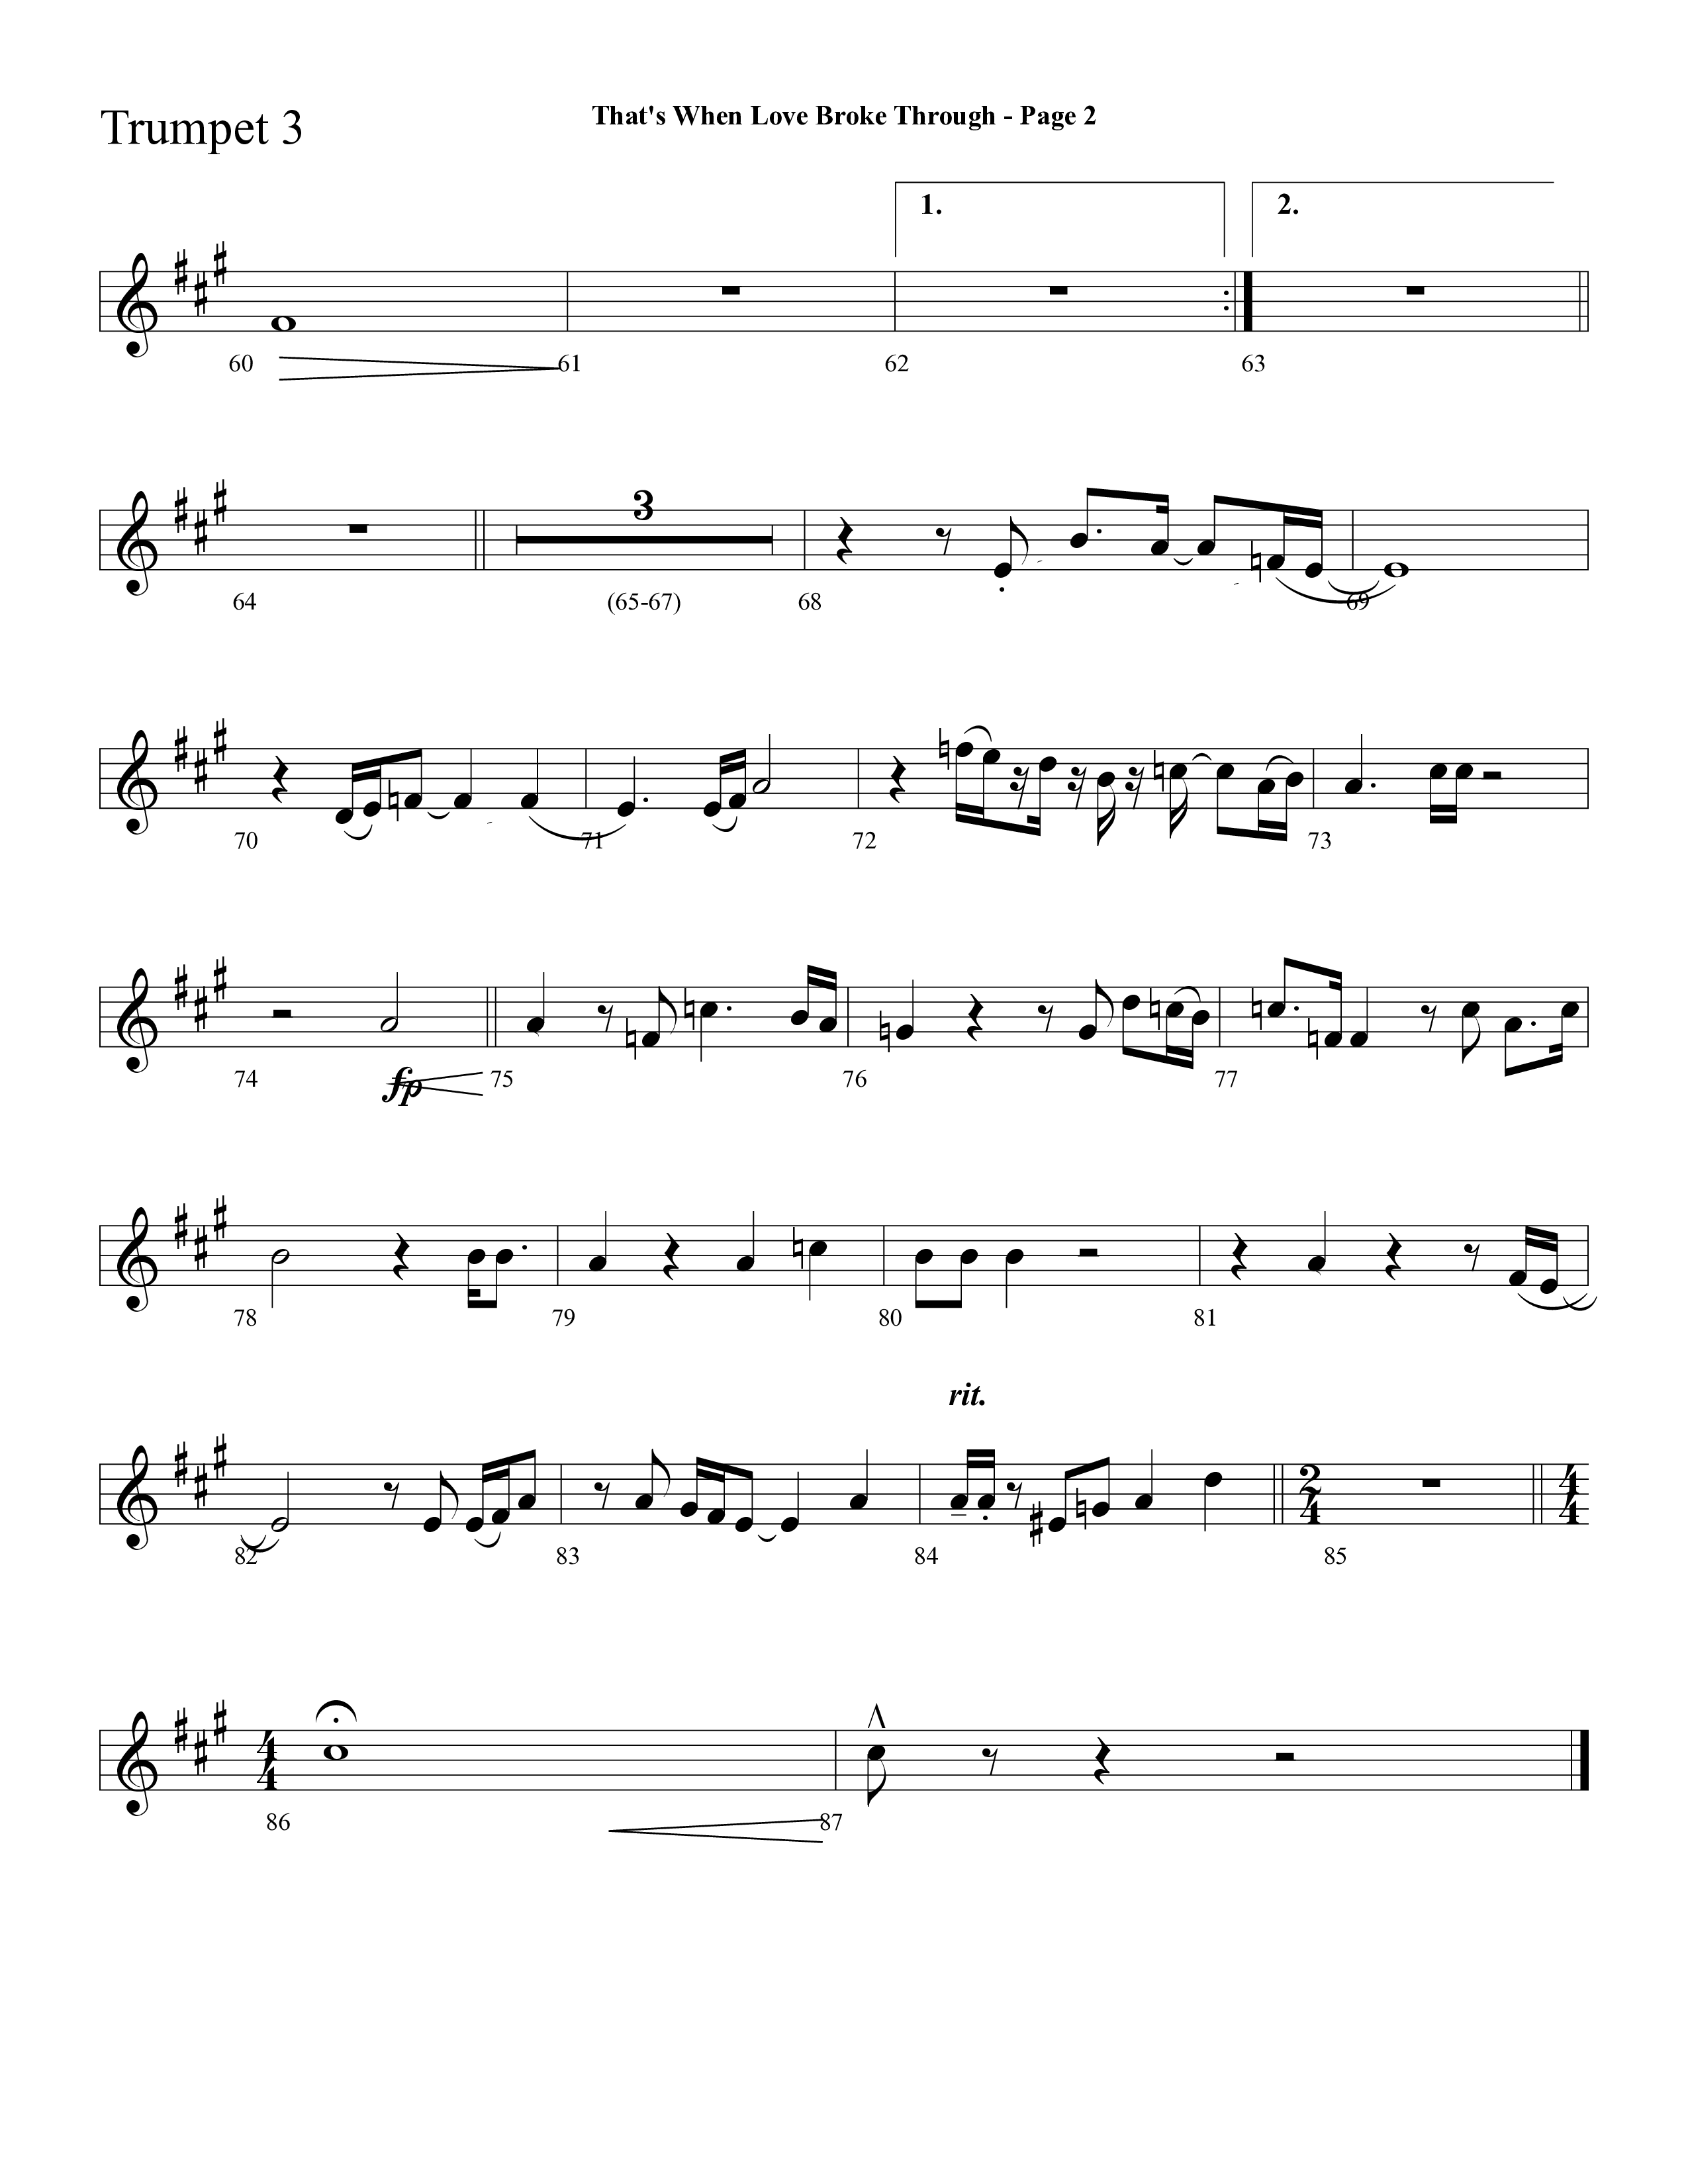 That's When Love Broke Through (Choral Anthem SATB) Trumpet 3 (Lifeway Choral / Arr. Mark Willard / Orch. Stephen K. Hand / Orch. Phillip Keveren)